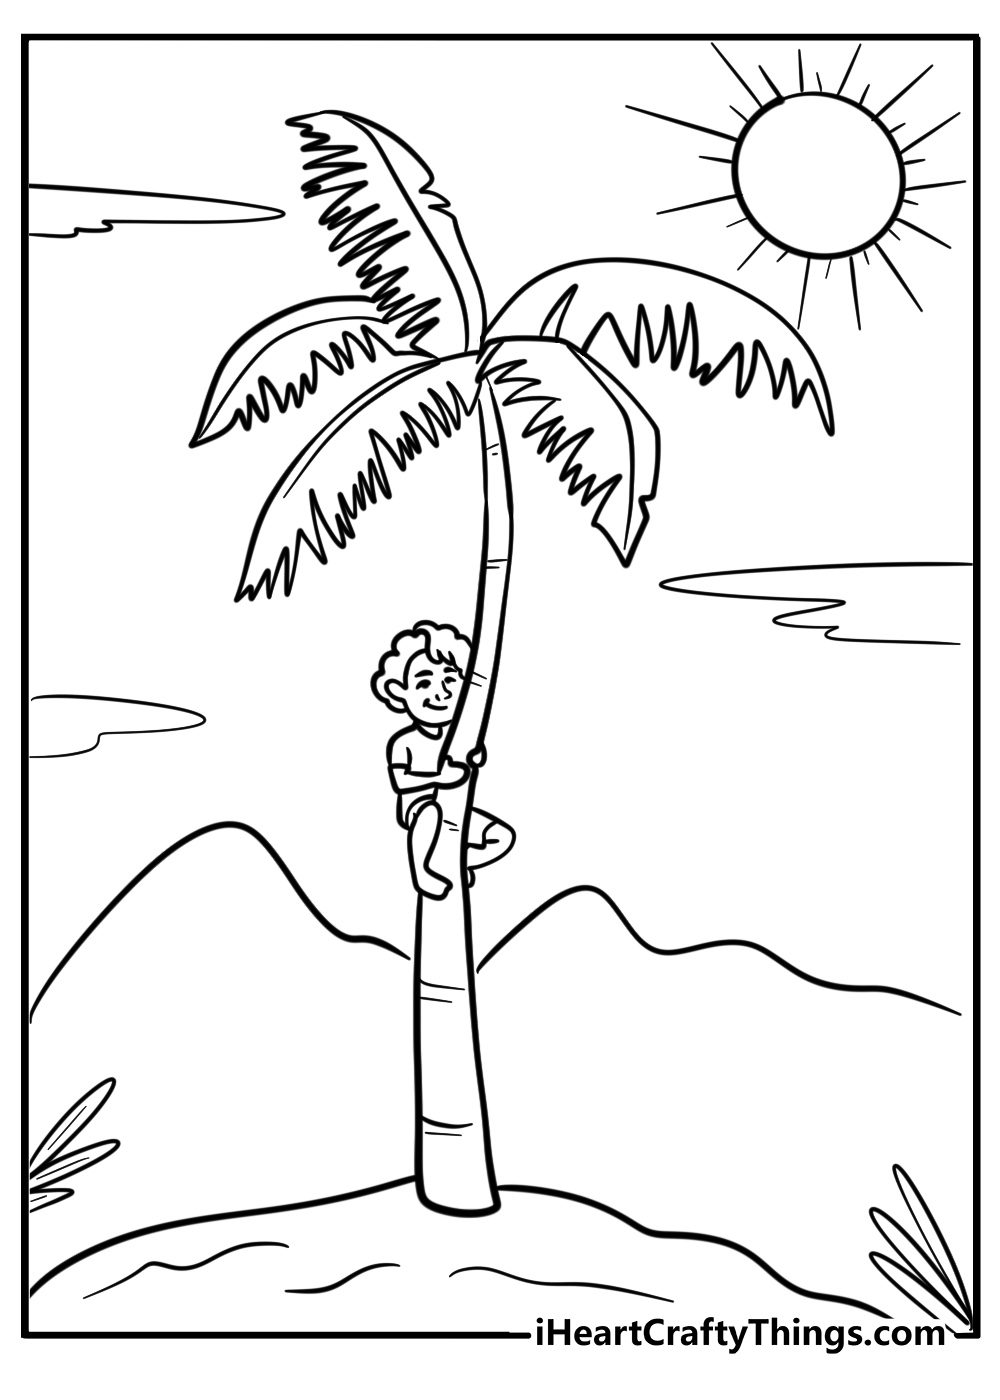 A little boy climbing up a palm tree